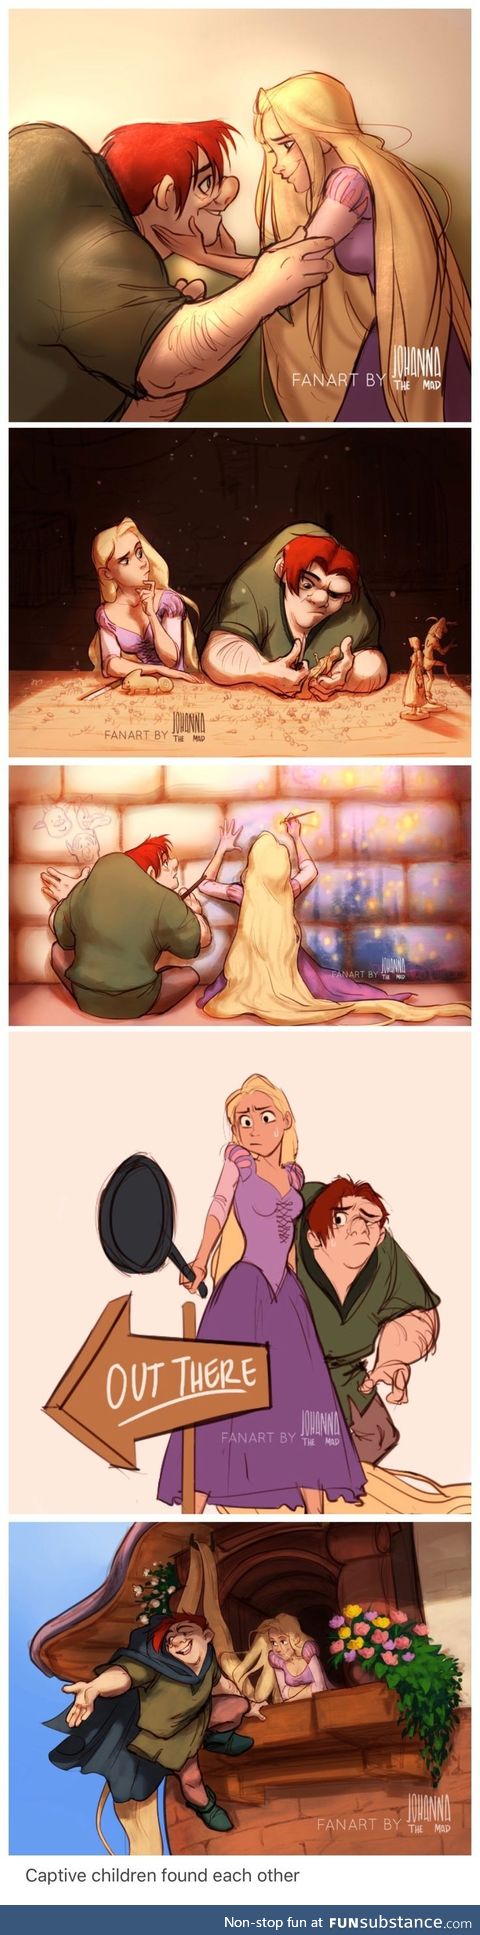 Quasimodo and Rapunzel